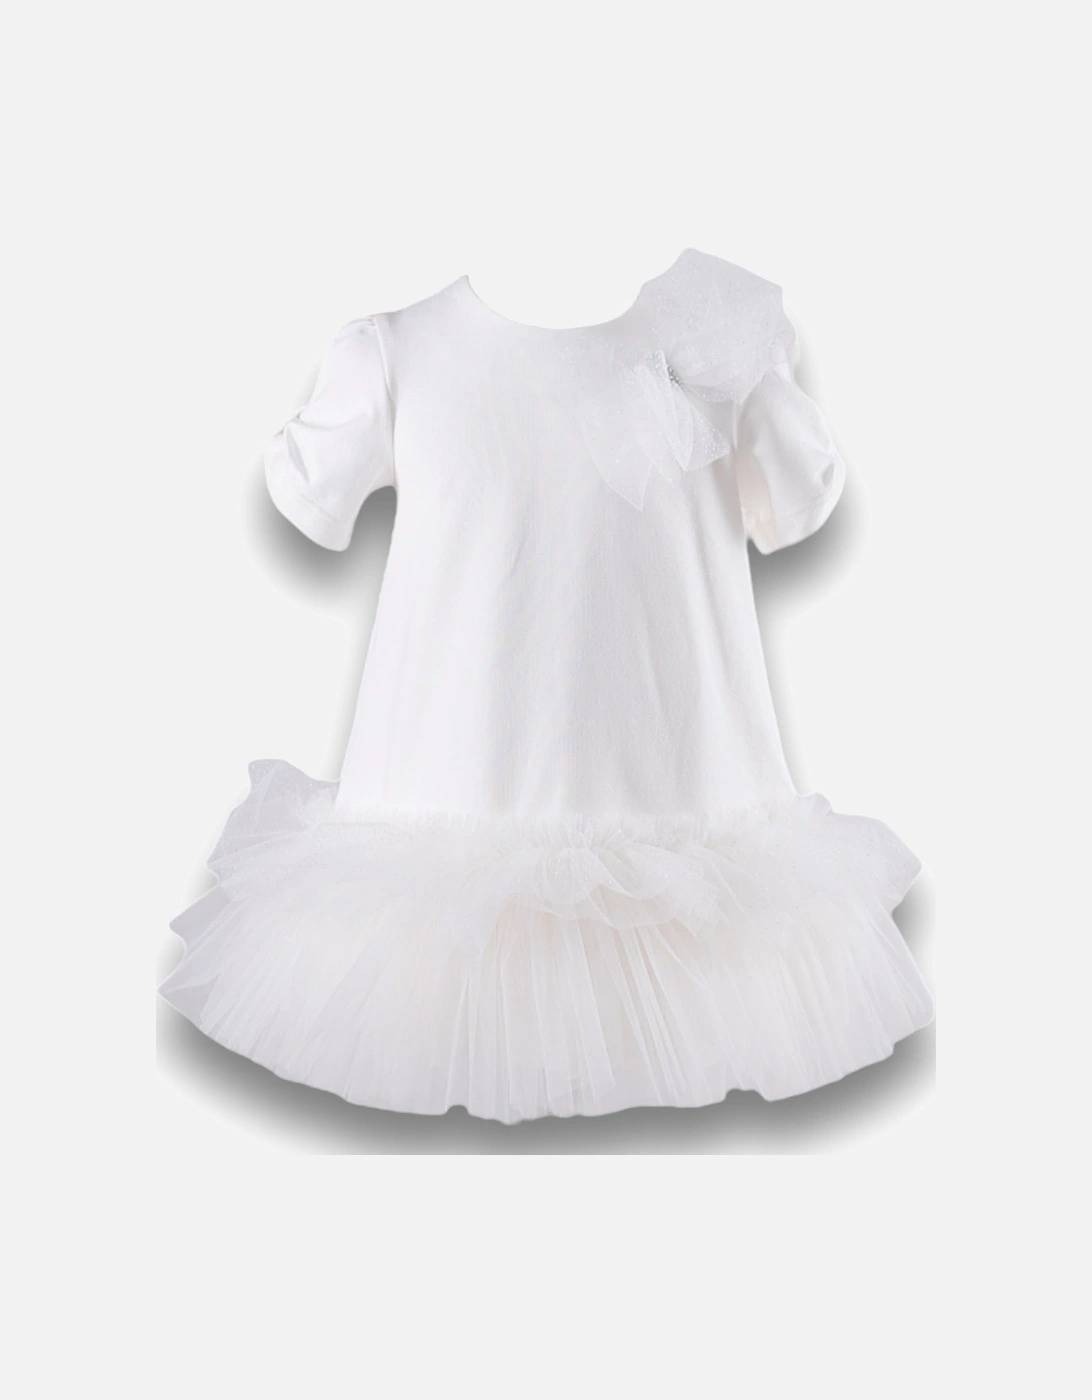 White Tutu Dress